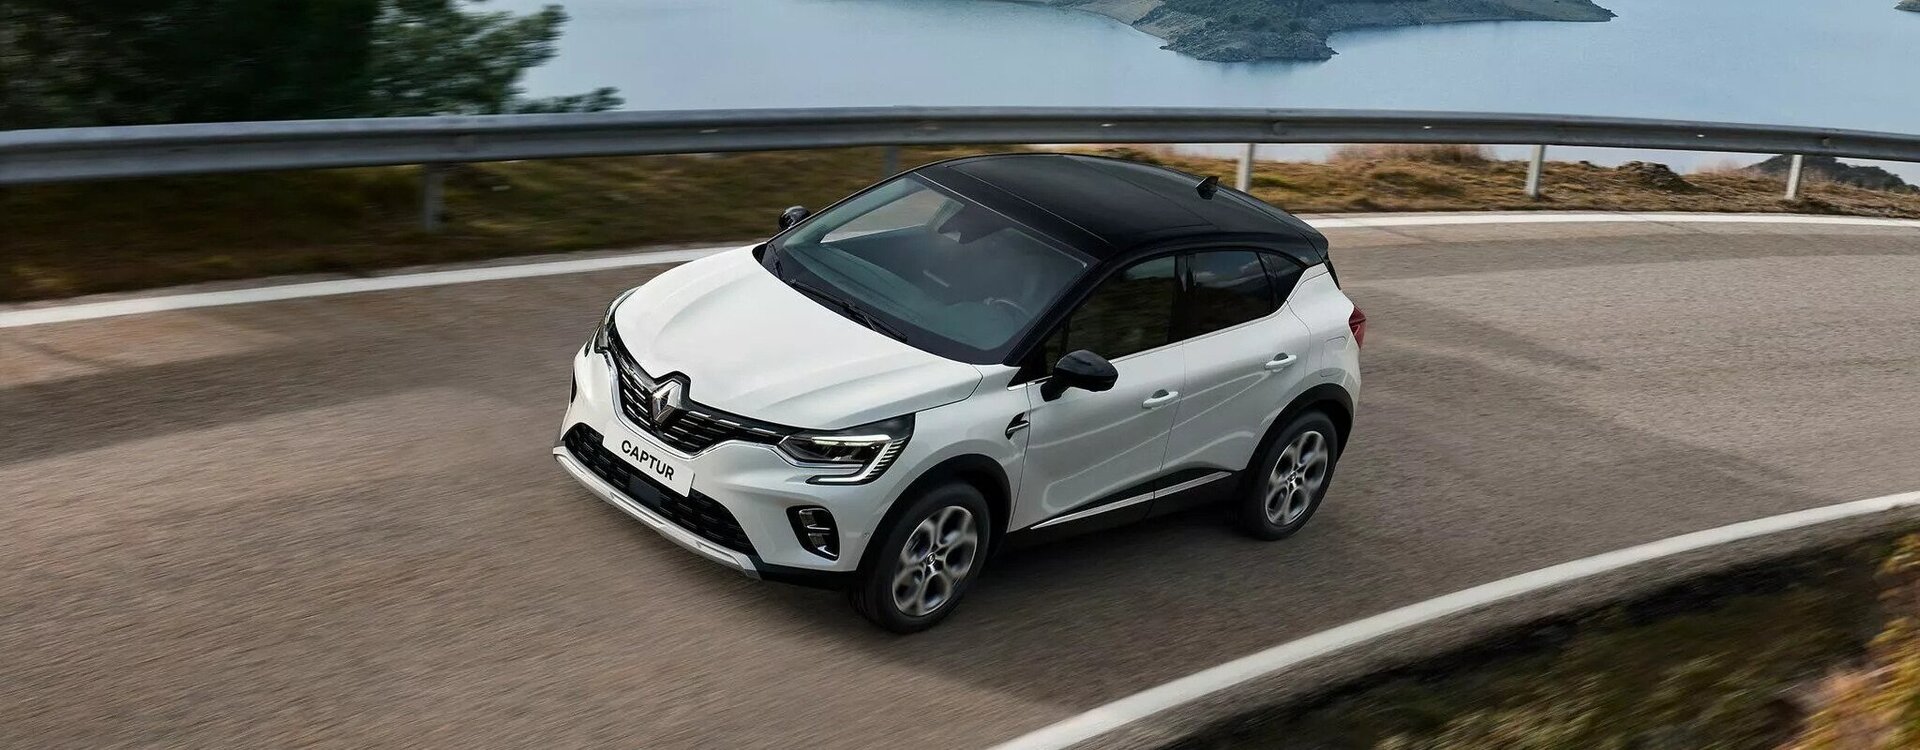 New Renault Captur Hero Image